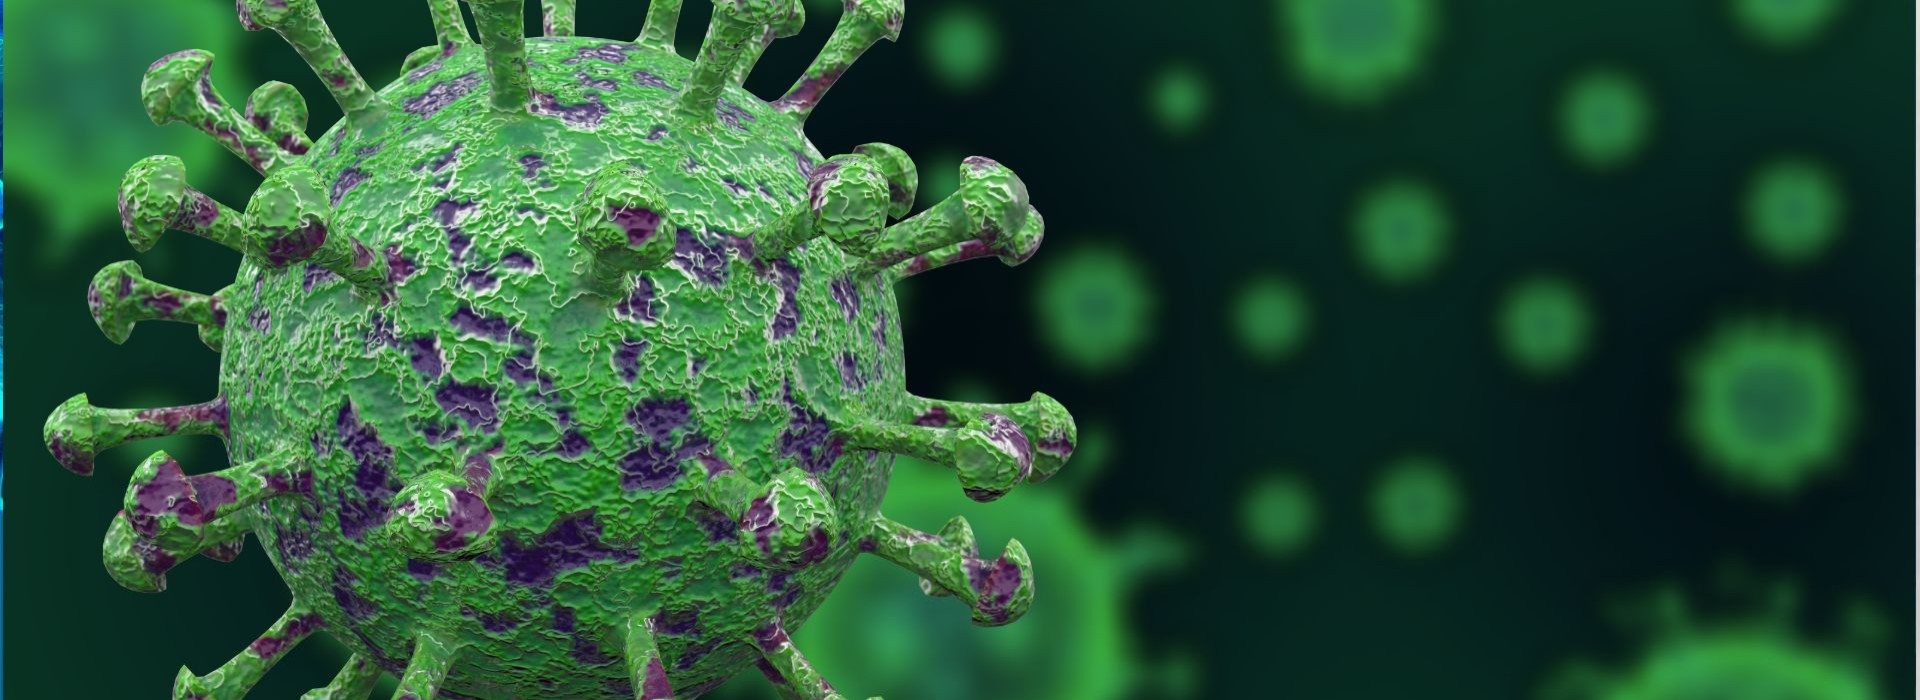 Czy mamy kontrolę nad epidemią koronawirusa w Polsce? Rozmowa z dr. Pawłem Grzesiowskim